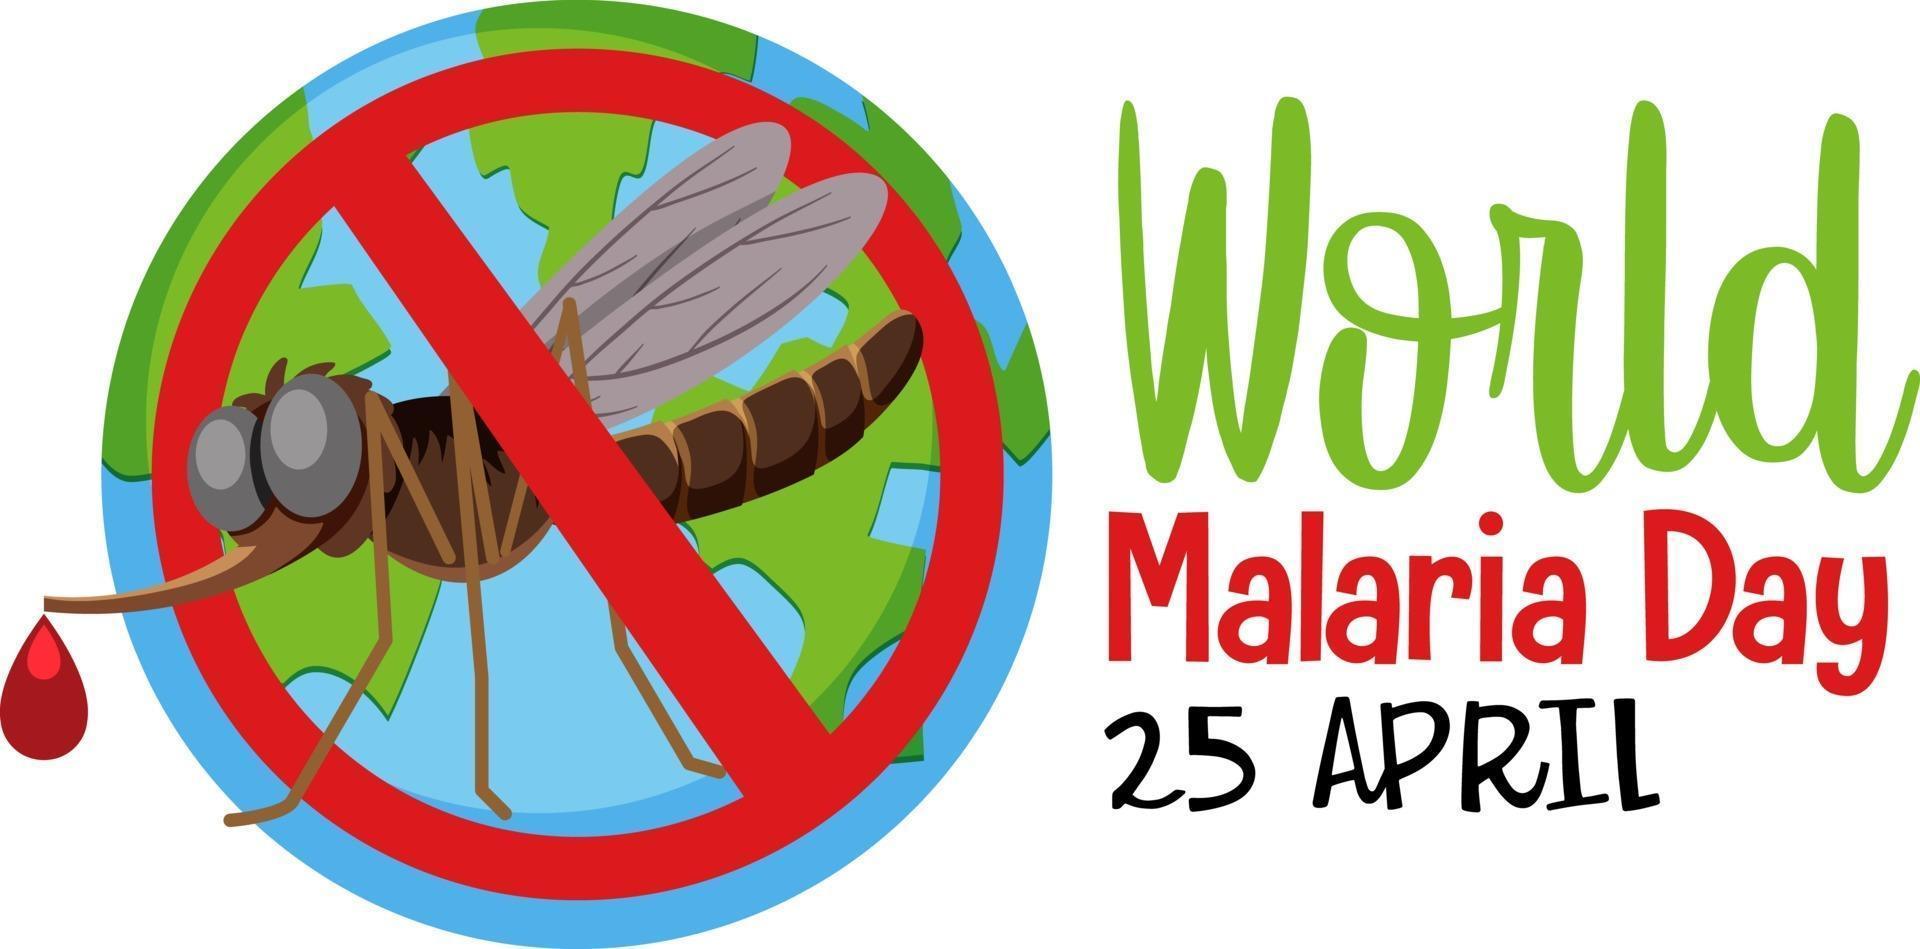 dia mundial da malária sem bandeira do mosquito vetor